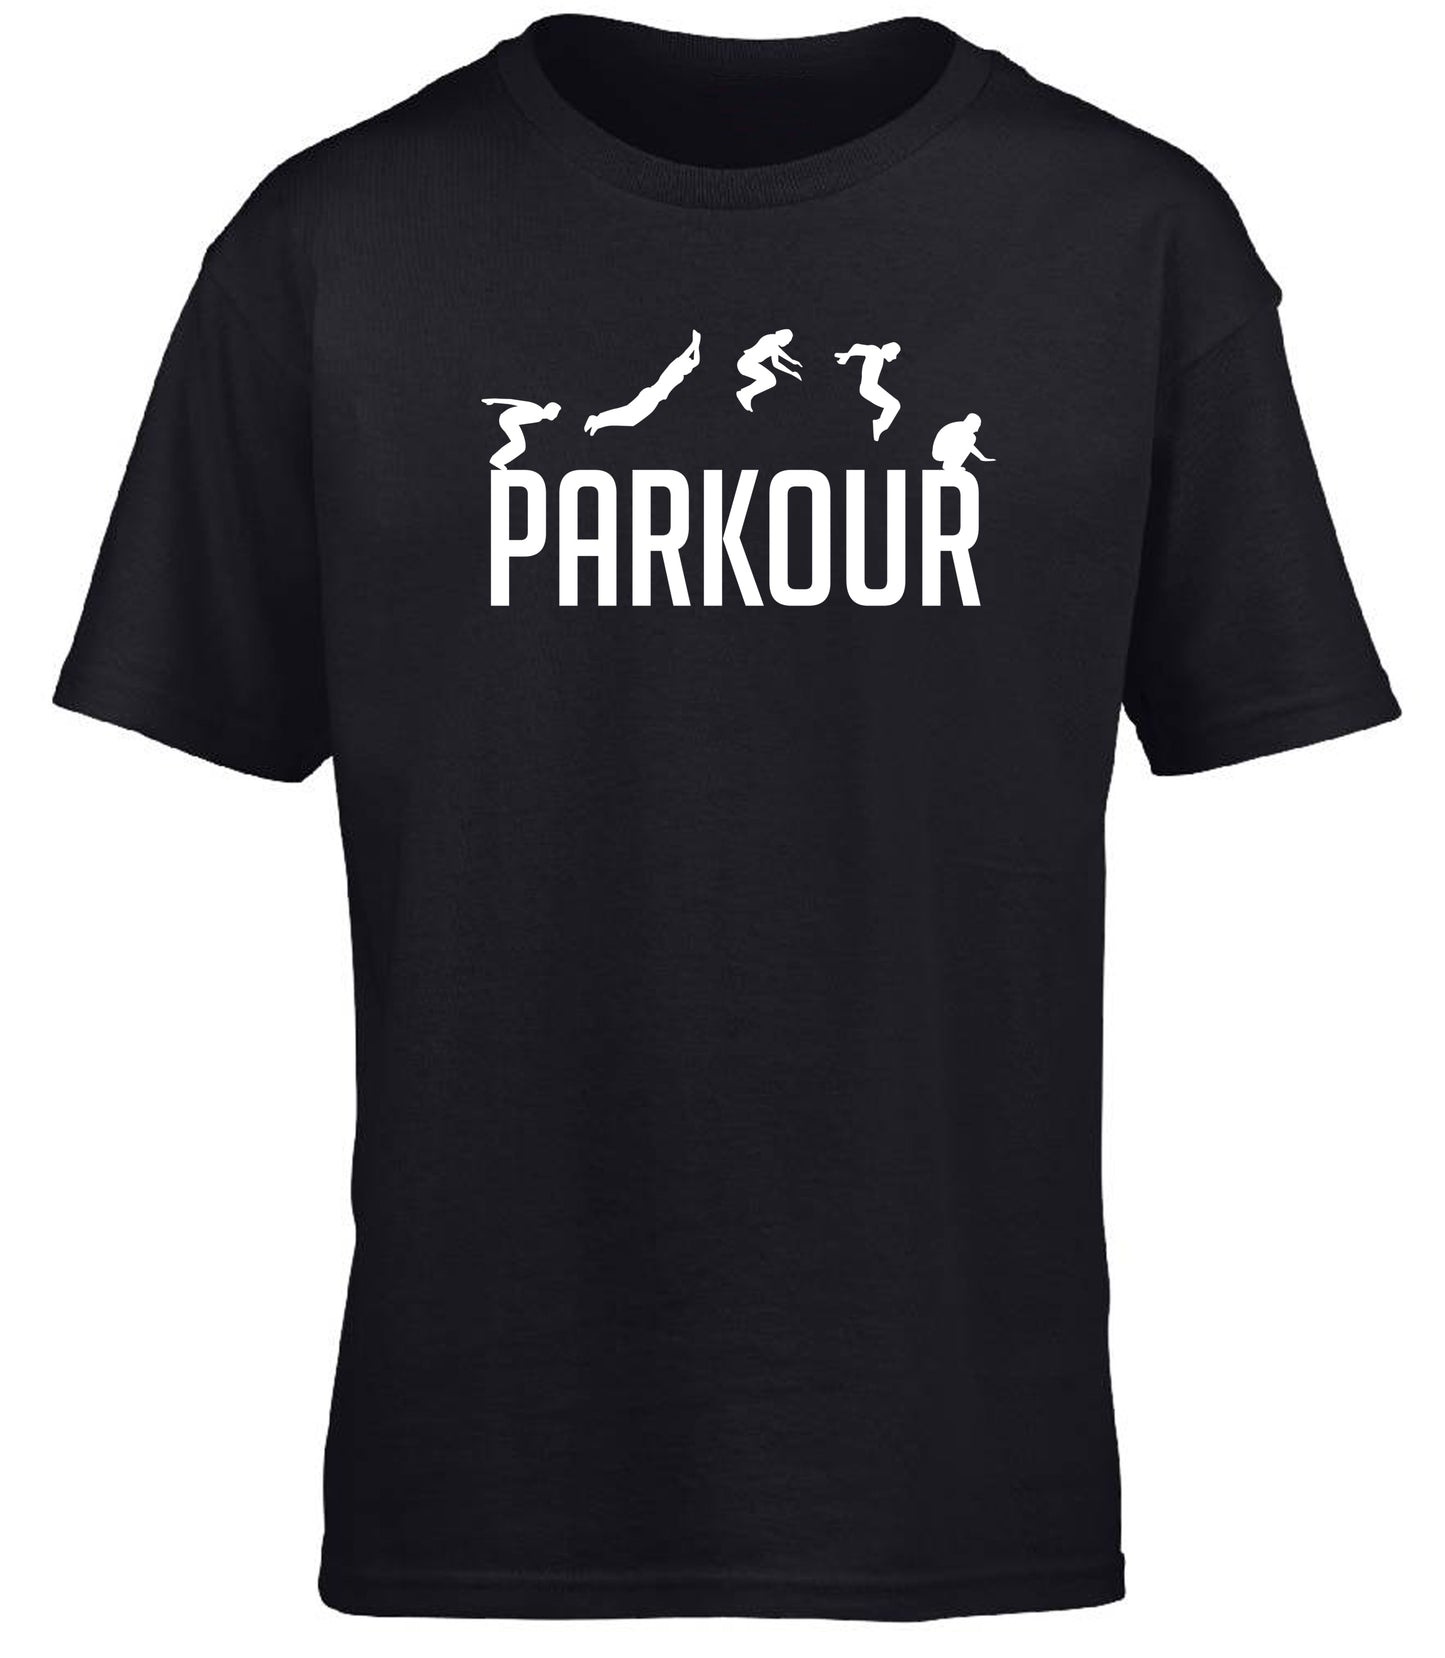 Parkour children's T-shirt